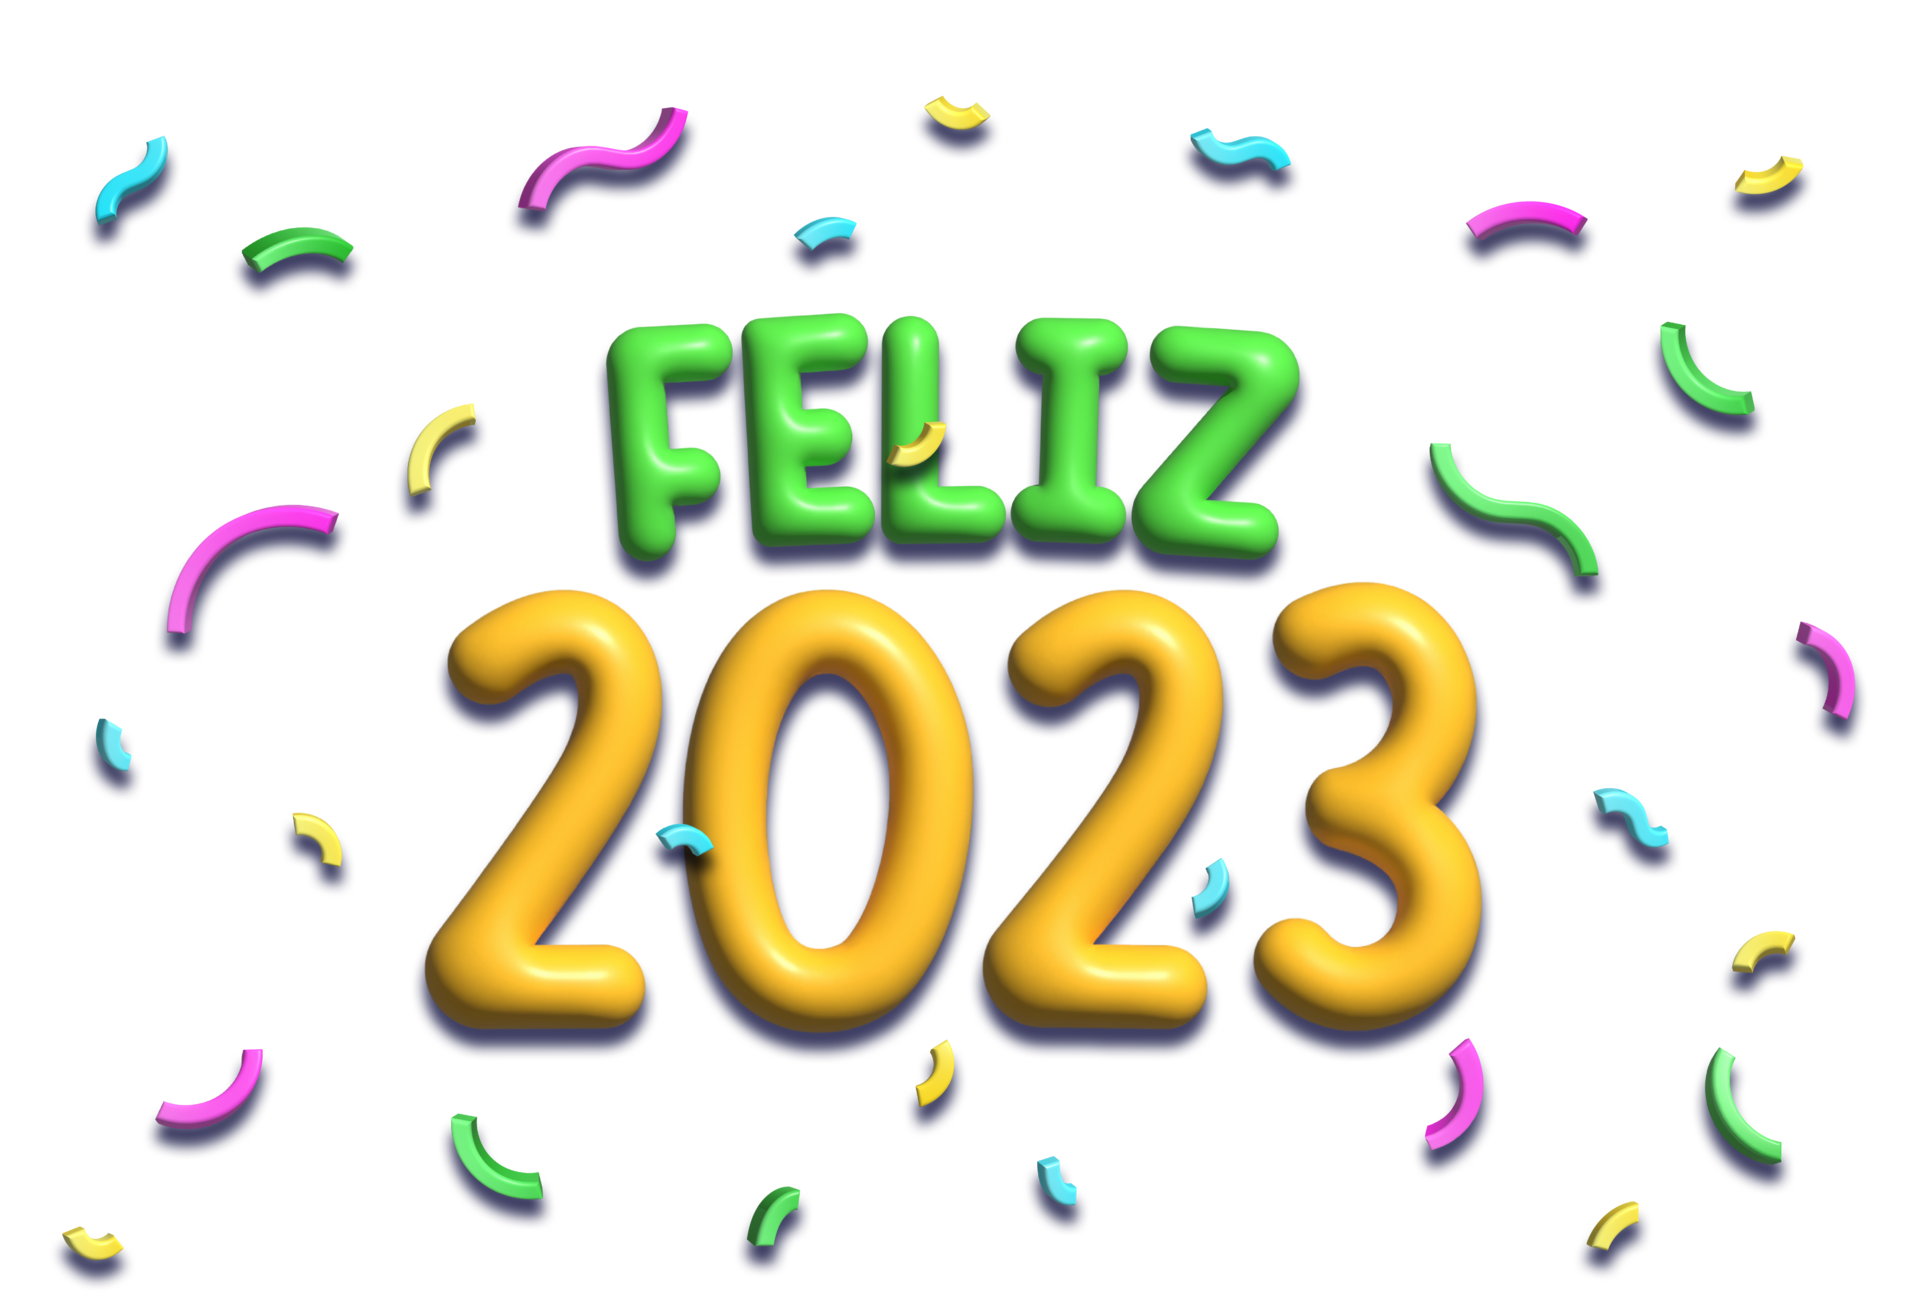 Free colorido feliz 2023 3d renderizado en portugués. traducción - feliz 2023. 14585445 PNG with Transparent Background